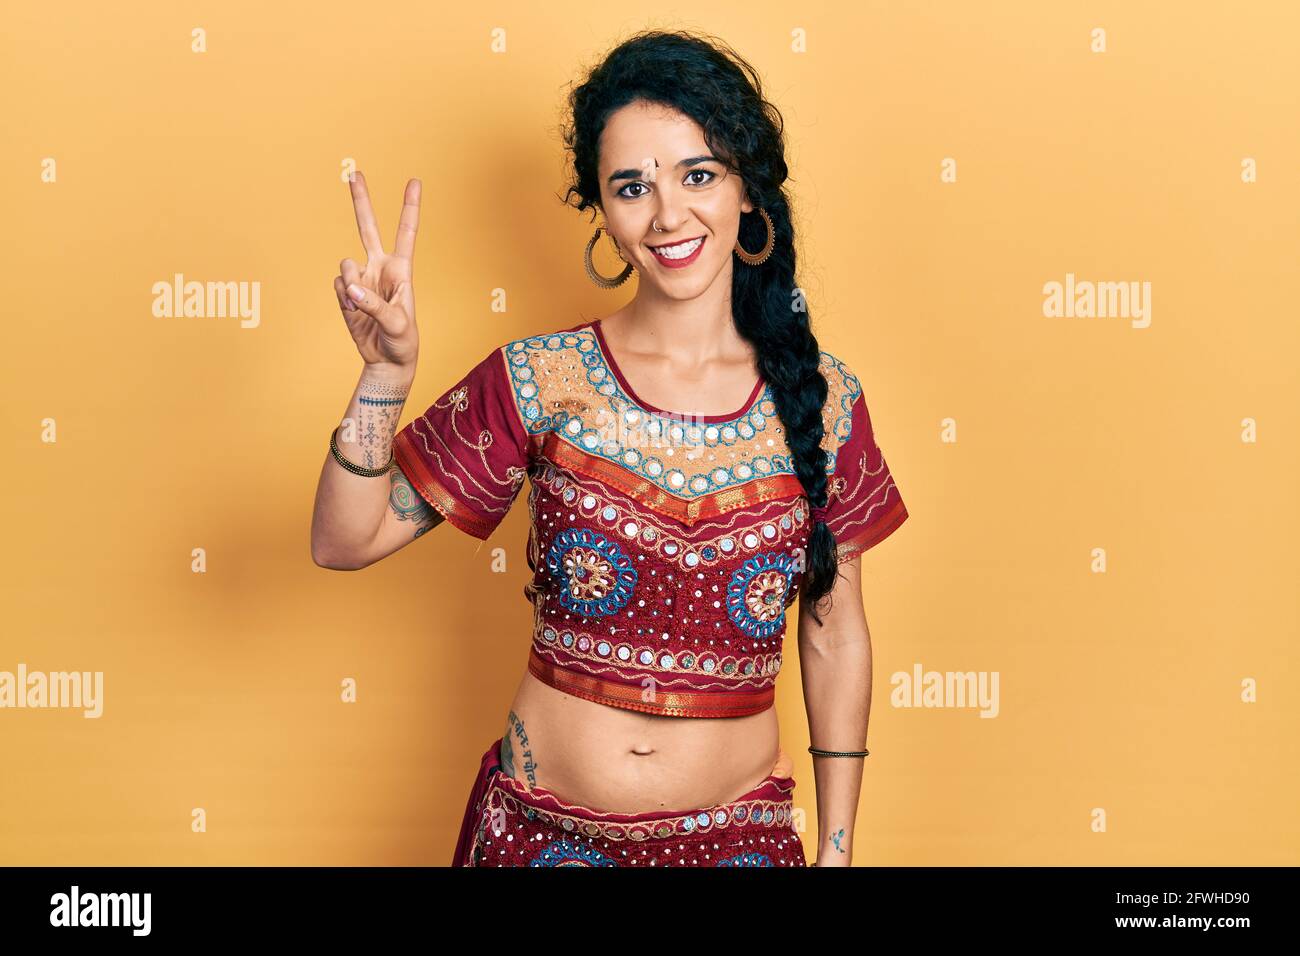 Junge Frau in Bindi- und bollywood-Kleidung zeigt und zeigt mit den Fingern Nummer zwei auf, während sie selbstbewusst und glücklich lächelt. Stockfoto